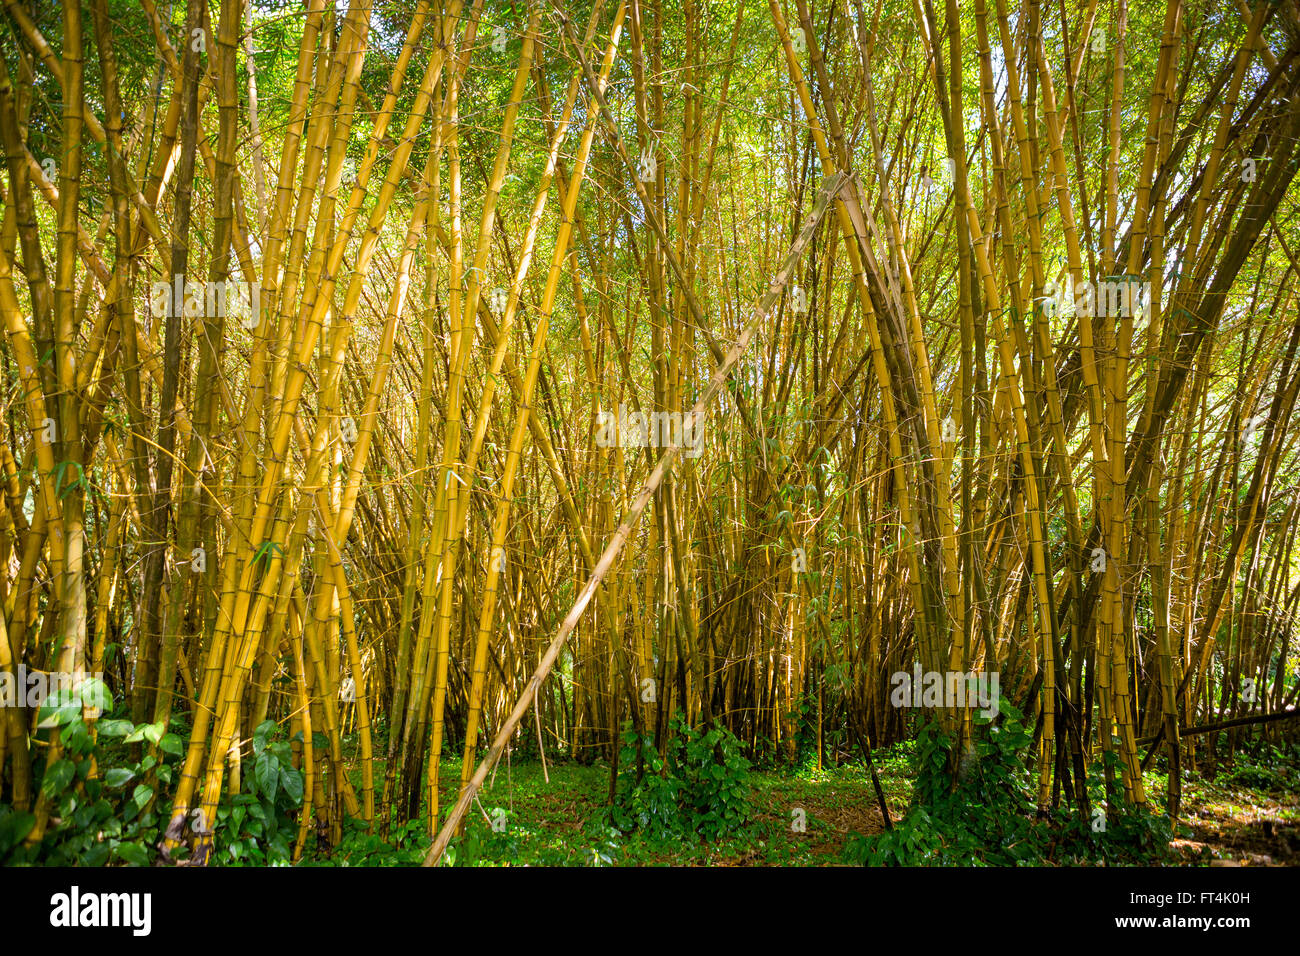 Lush bamboo garden Stock Photo